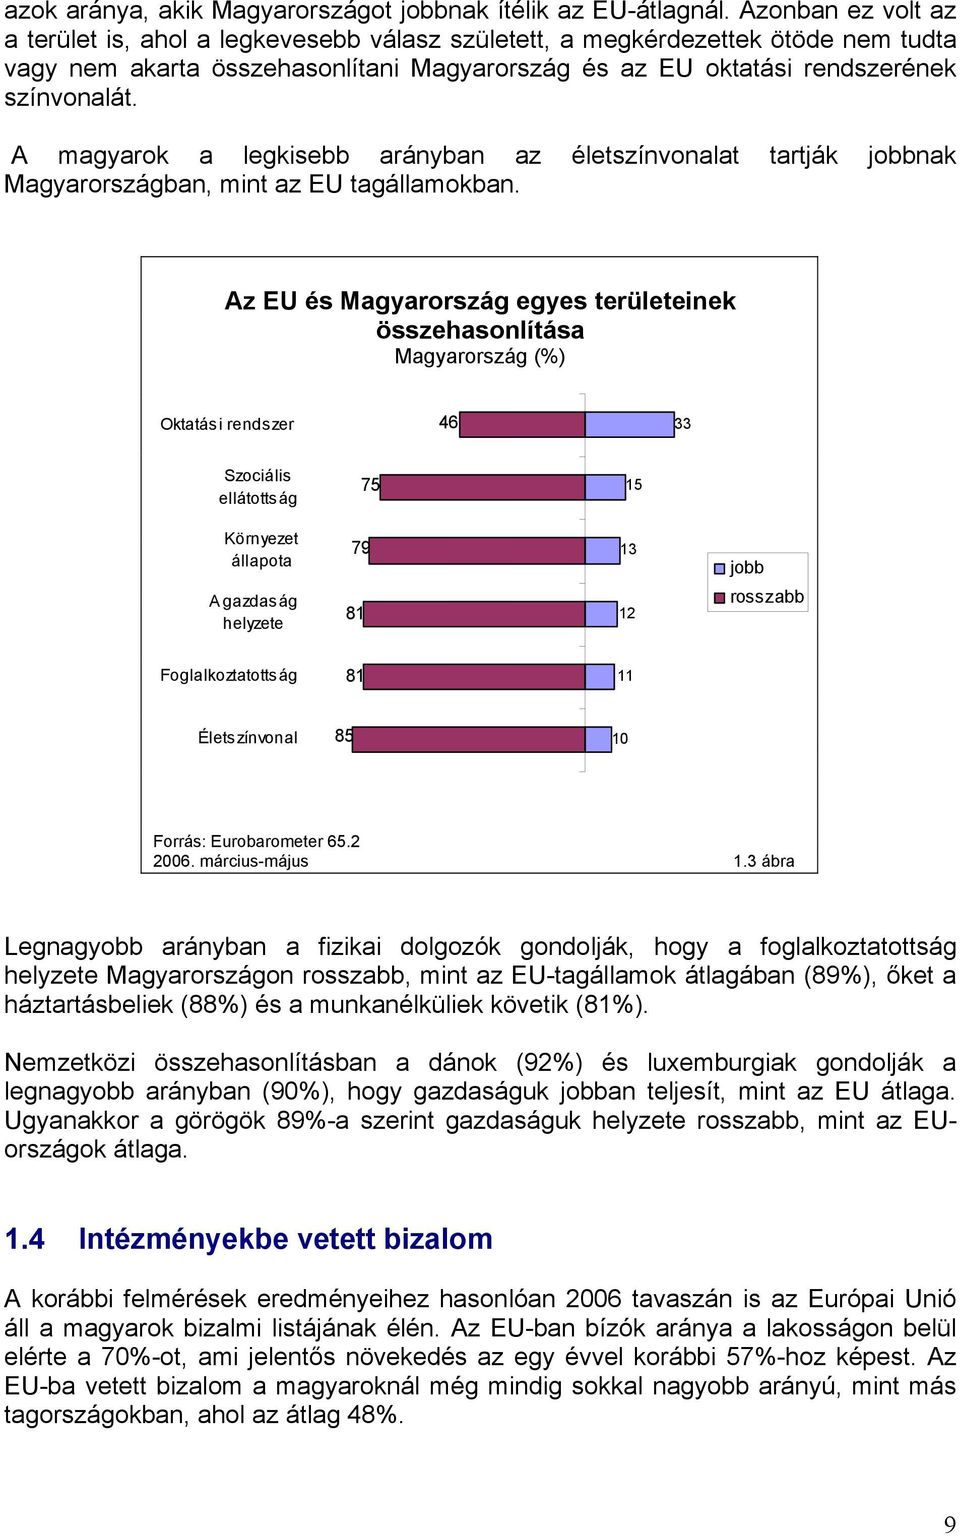 A magyarok a legkisebb arányban az életszínvonalat tartják jobbnak Magyarországban, mint az EU tagállamokban.